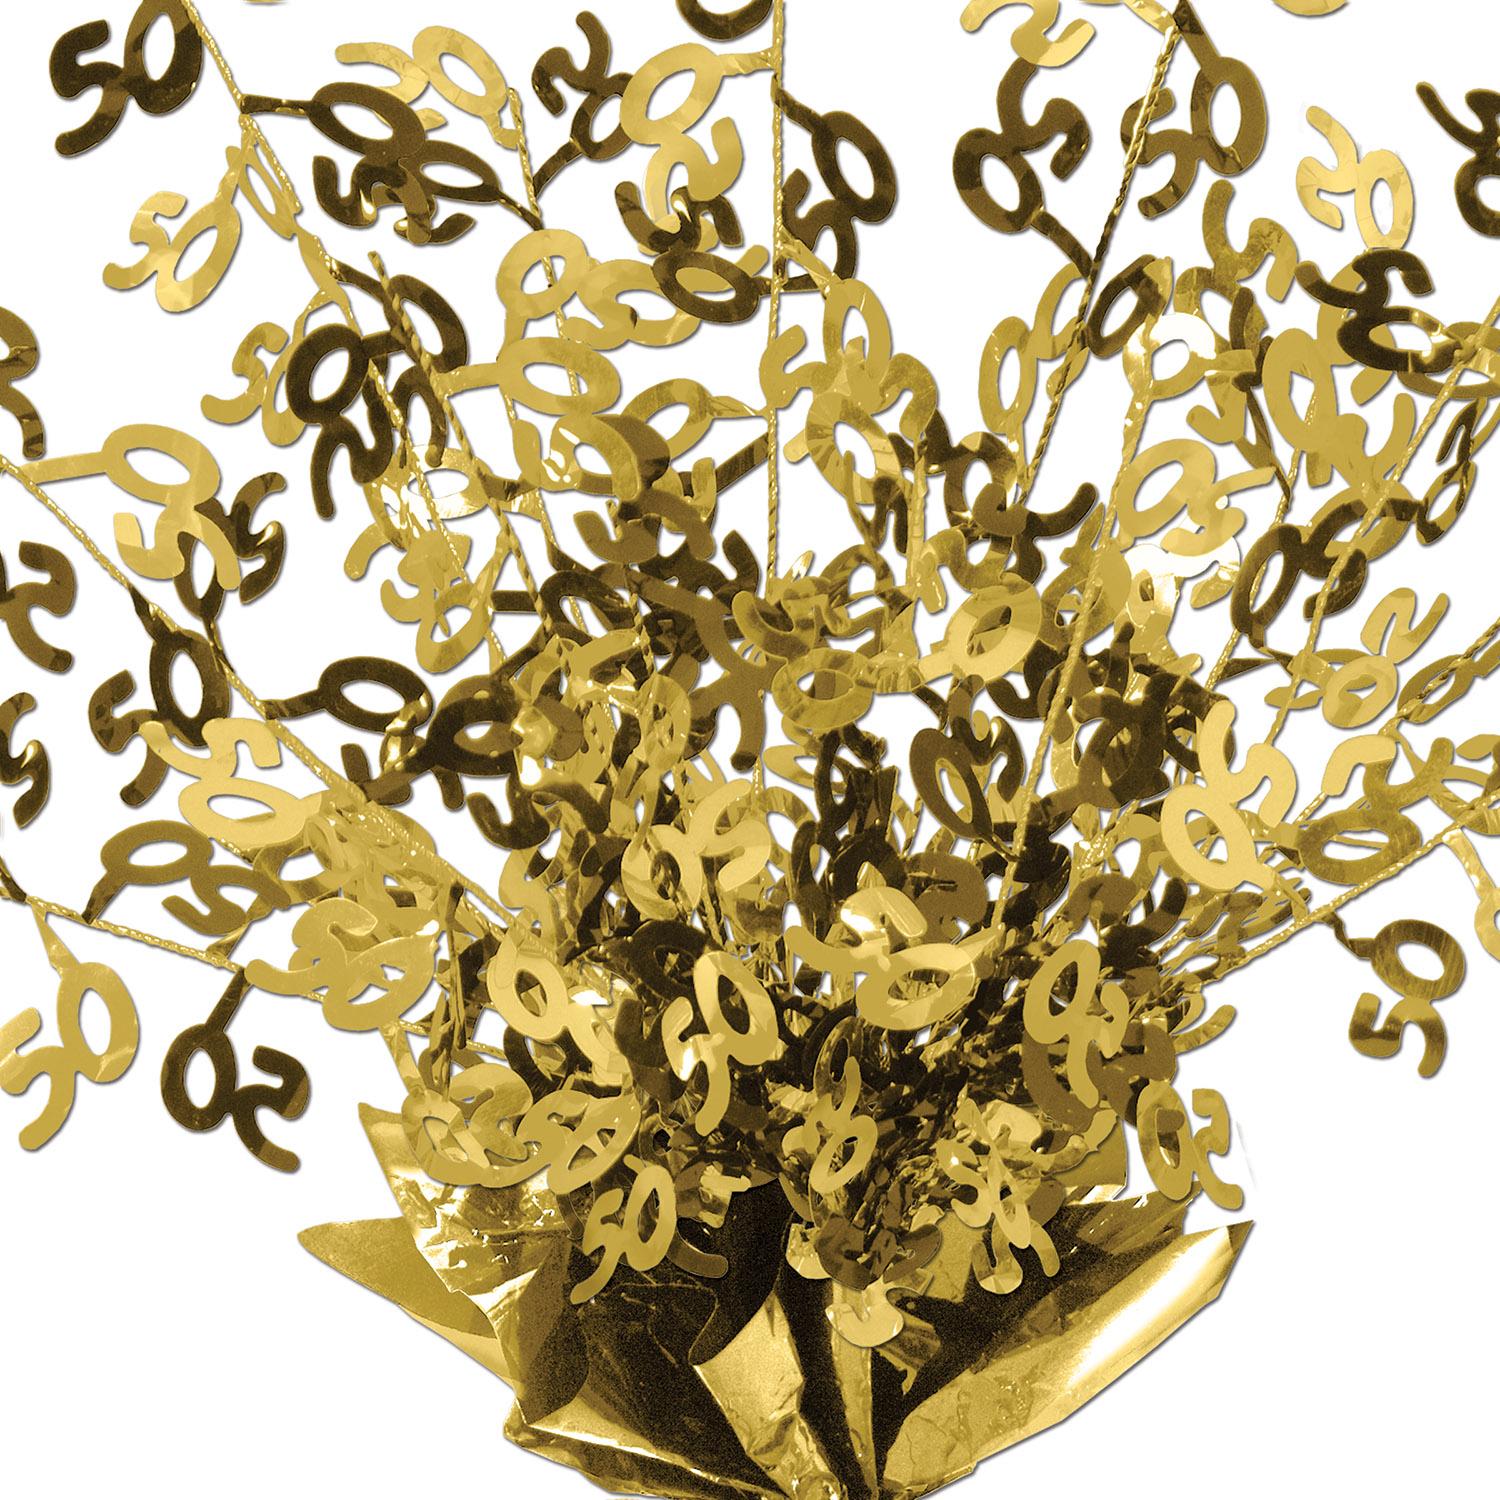 Beistle 50th Anniversary Gleam 'N Burst Centerpiece - gold